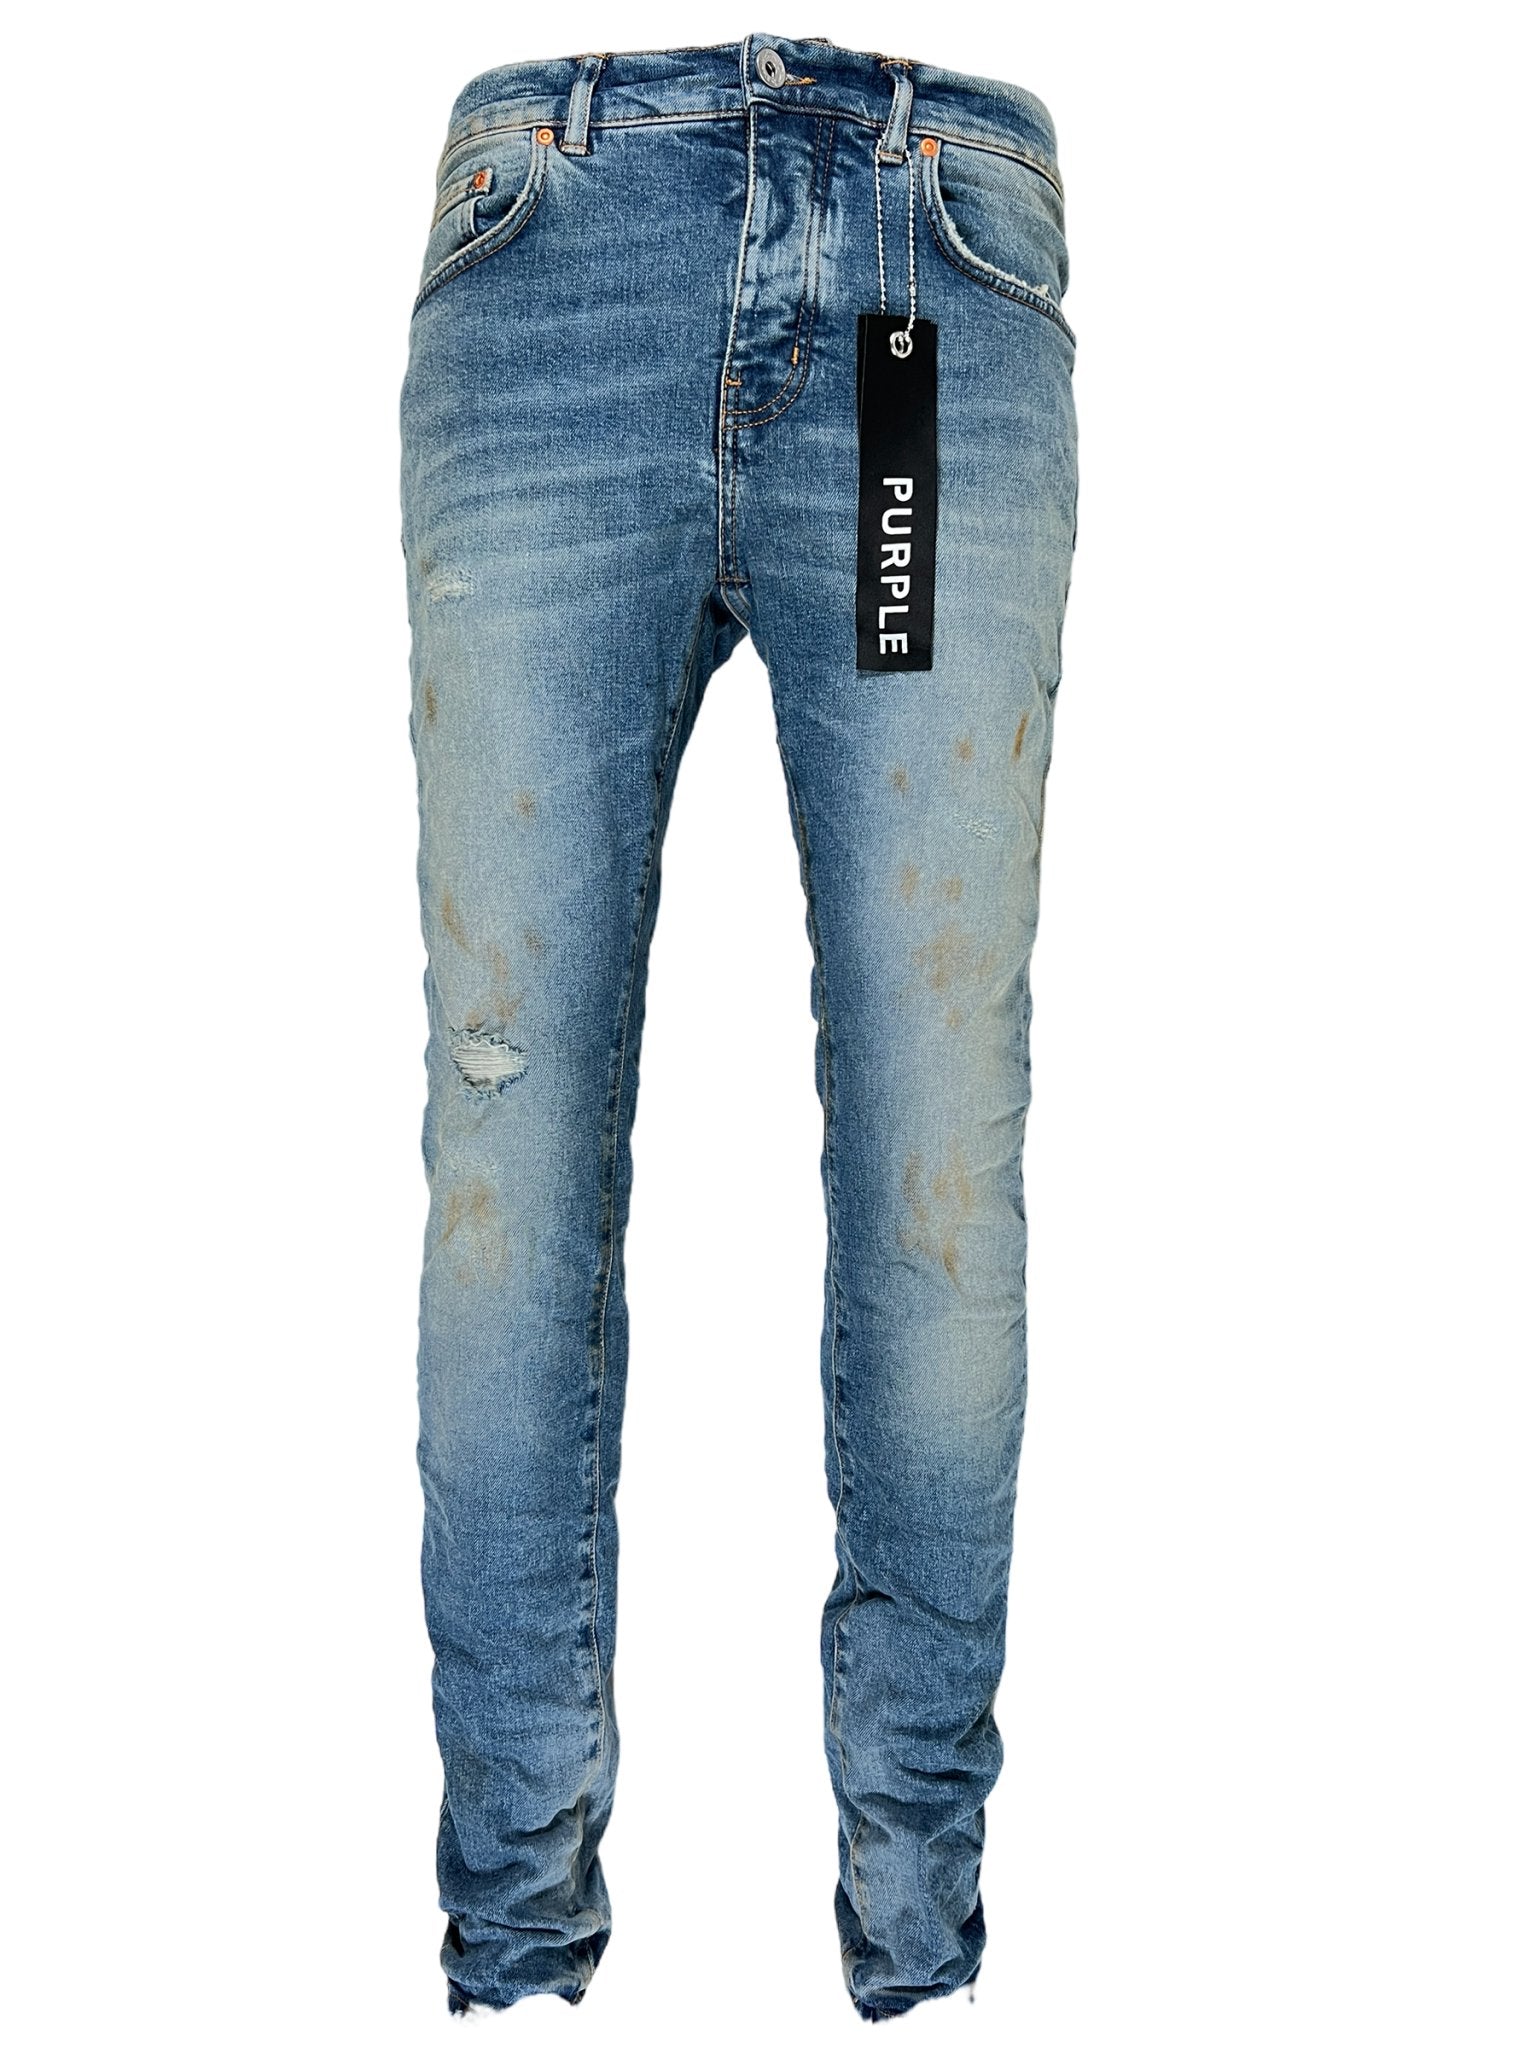 Indigo blue cotton blend denim jeans - PURPLE BRAND - Mariodannashop